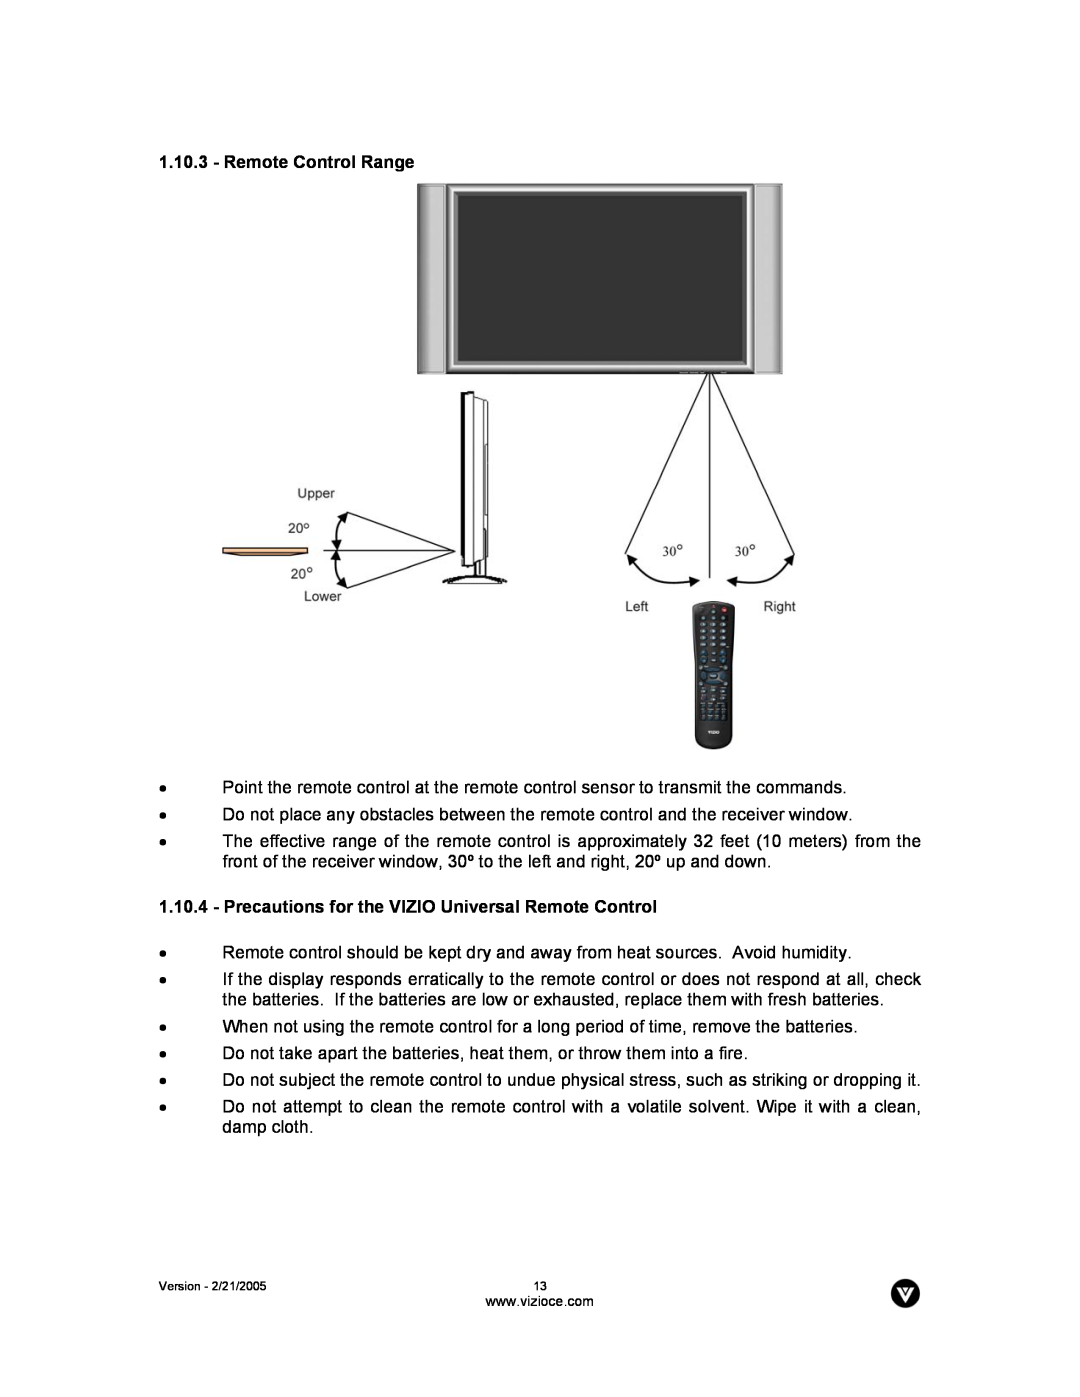 Vizio P42 manual Remote Control Range, Precautions for the VIZIO Universal Remote Control 